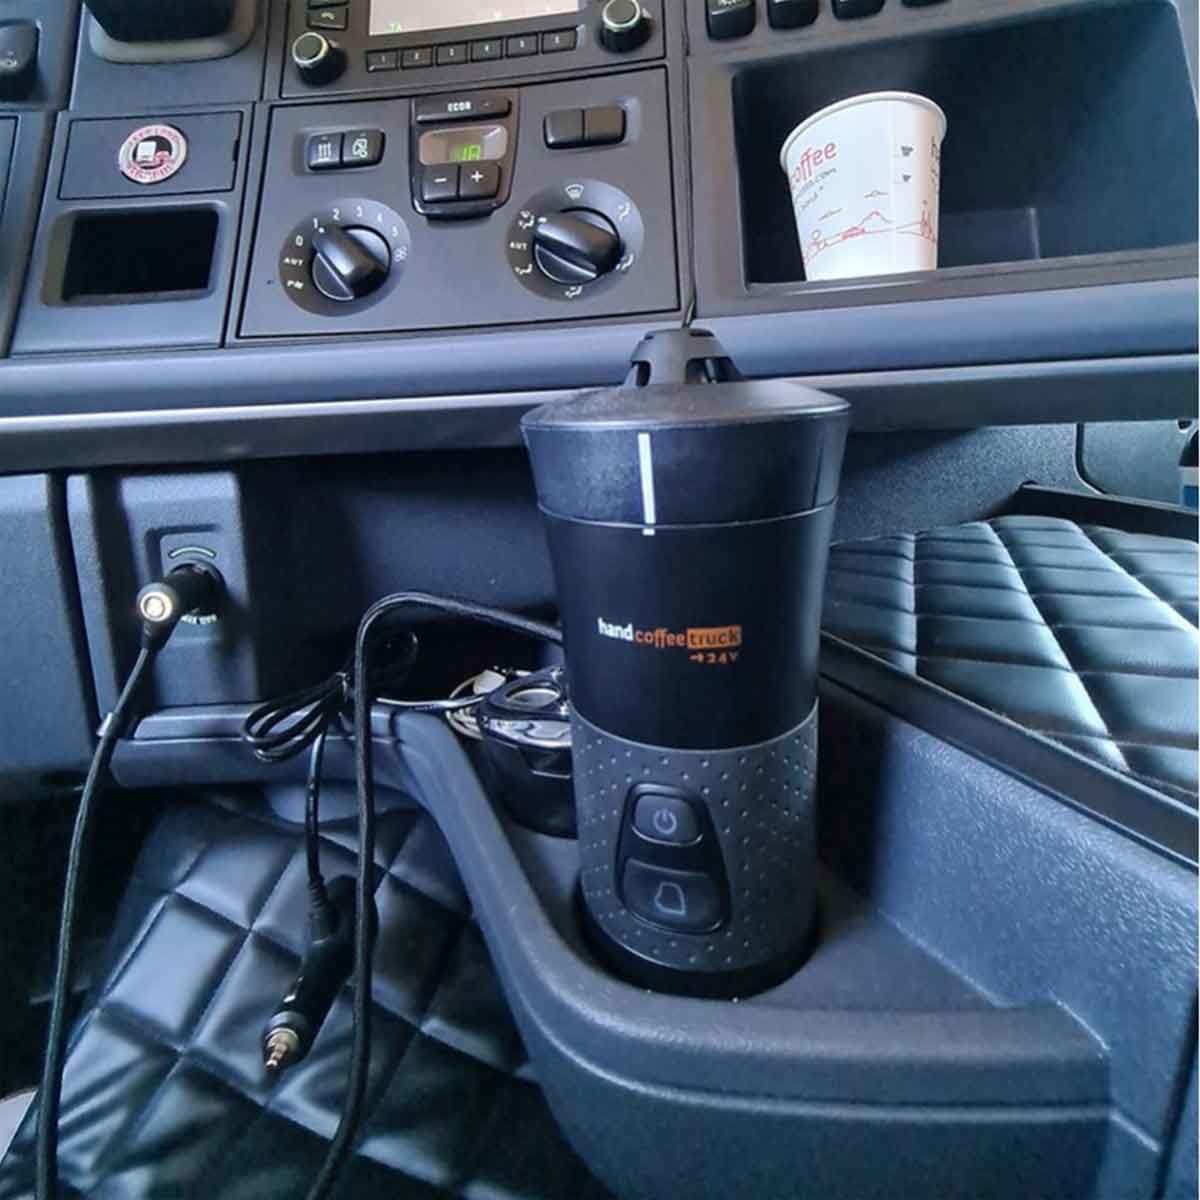 Machine à café Handcoffee Truck